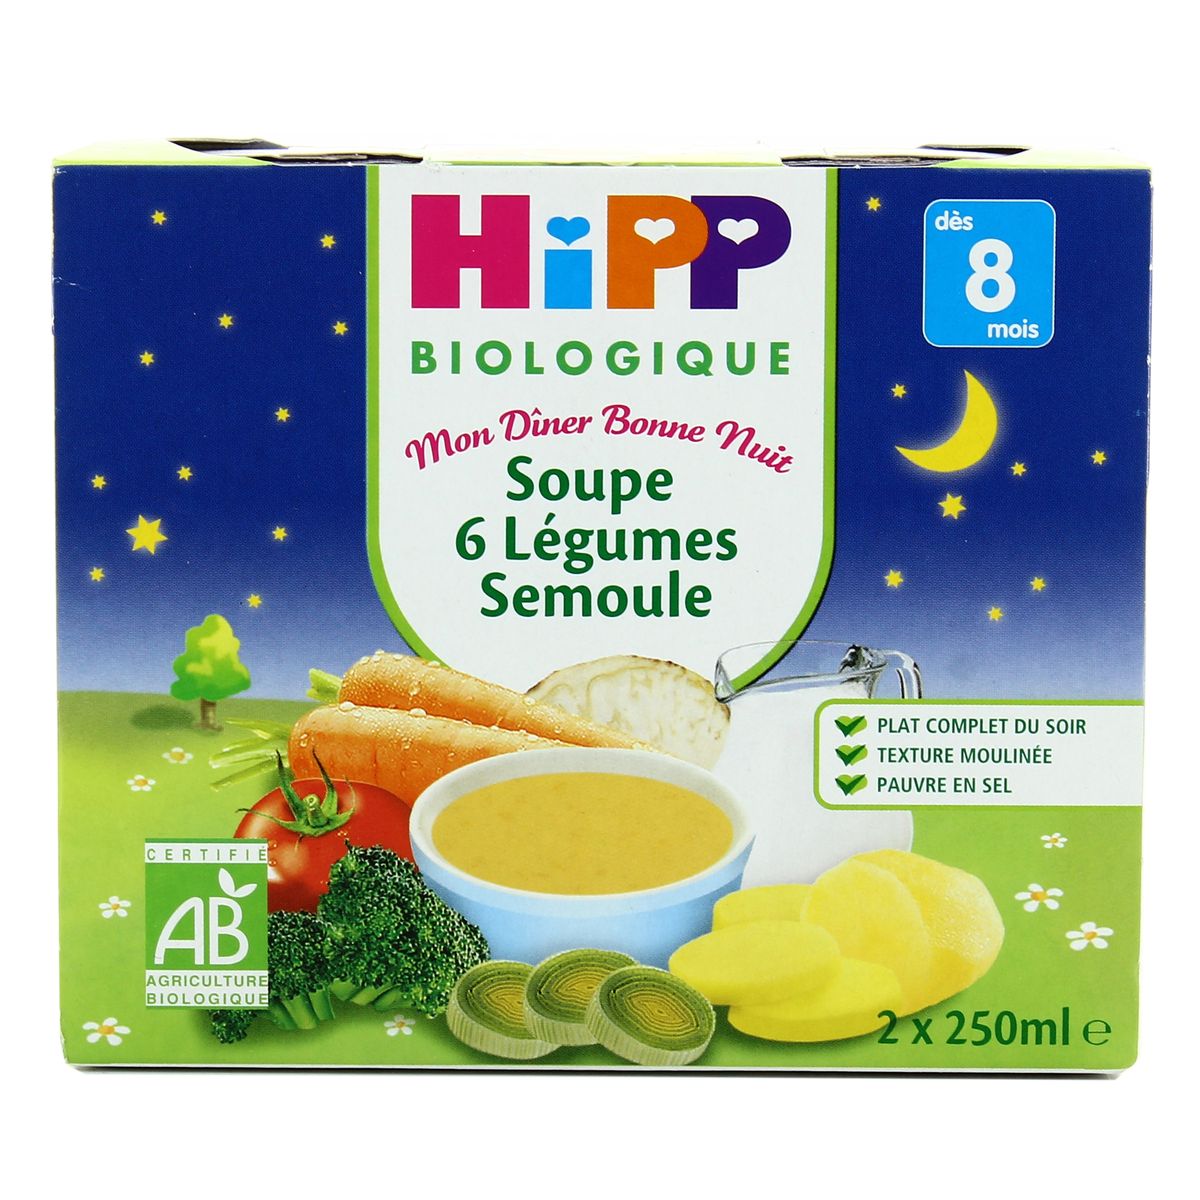 Achat Vente Hipp Soupe 6 Legumes Semoule Bio Des 8 Mois 2x250ml